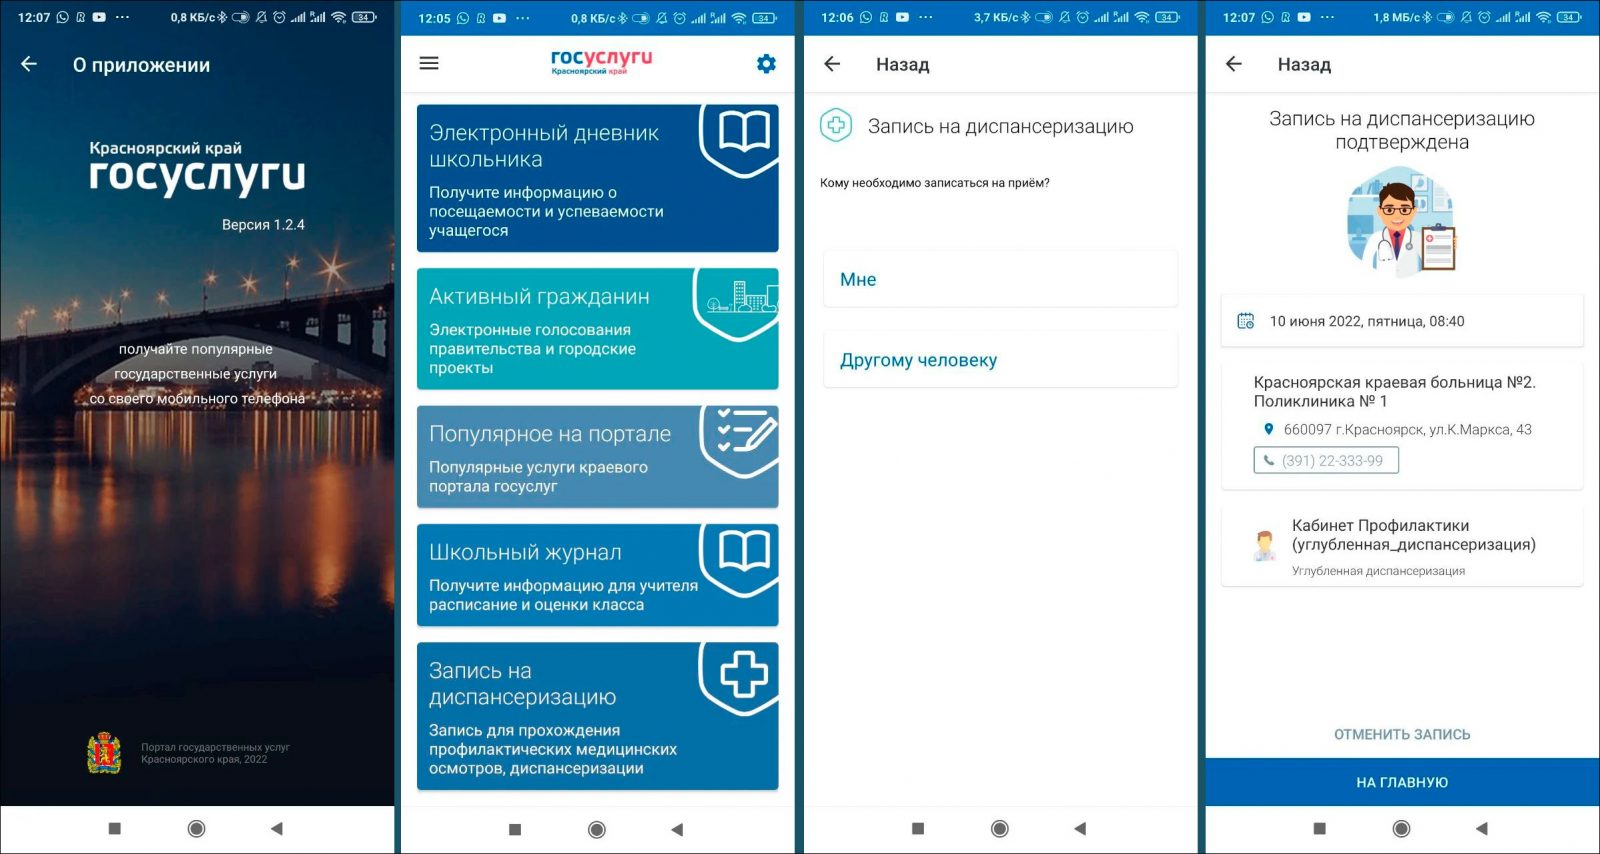 Два новых сервиса появились в мобильном приложении «Госуслуги Красноярского края»